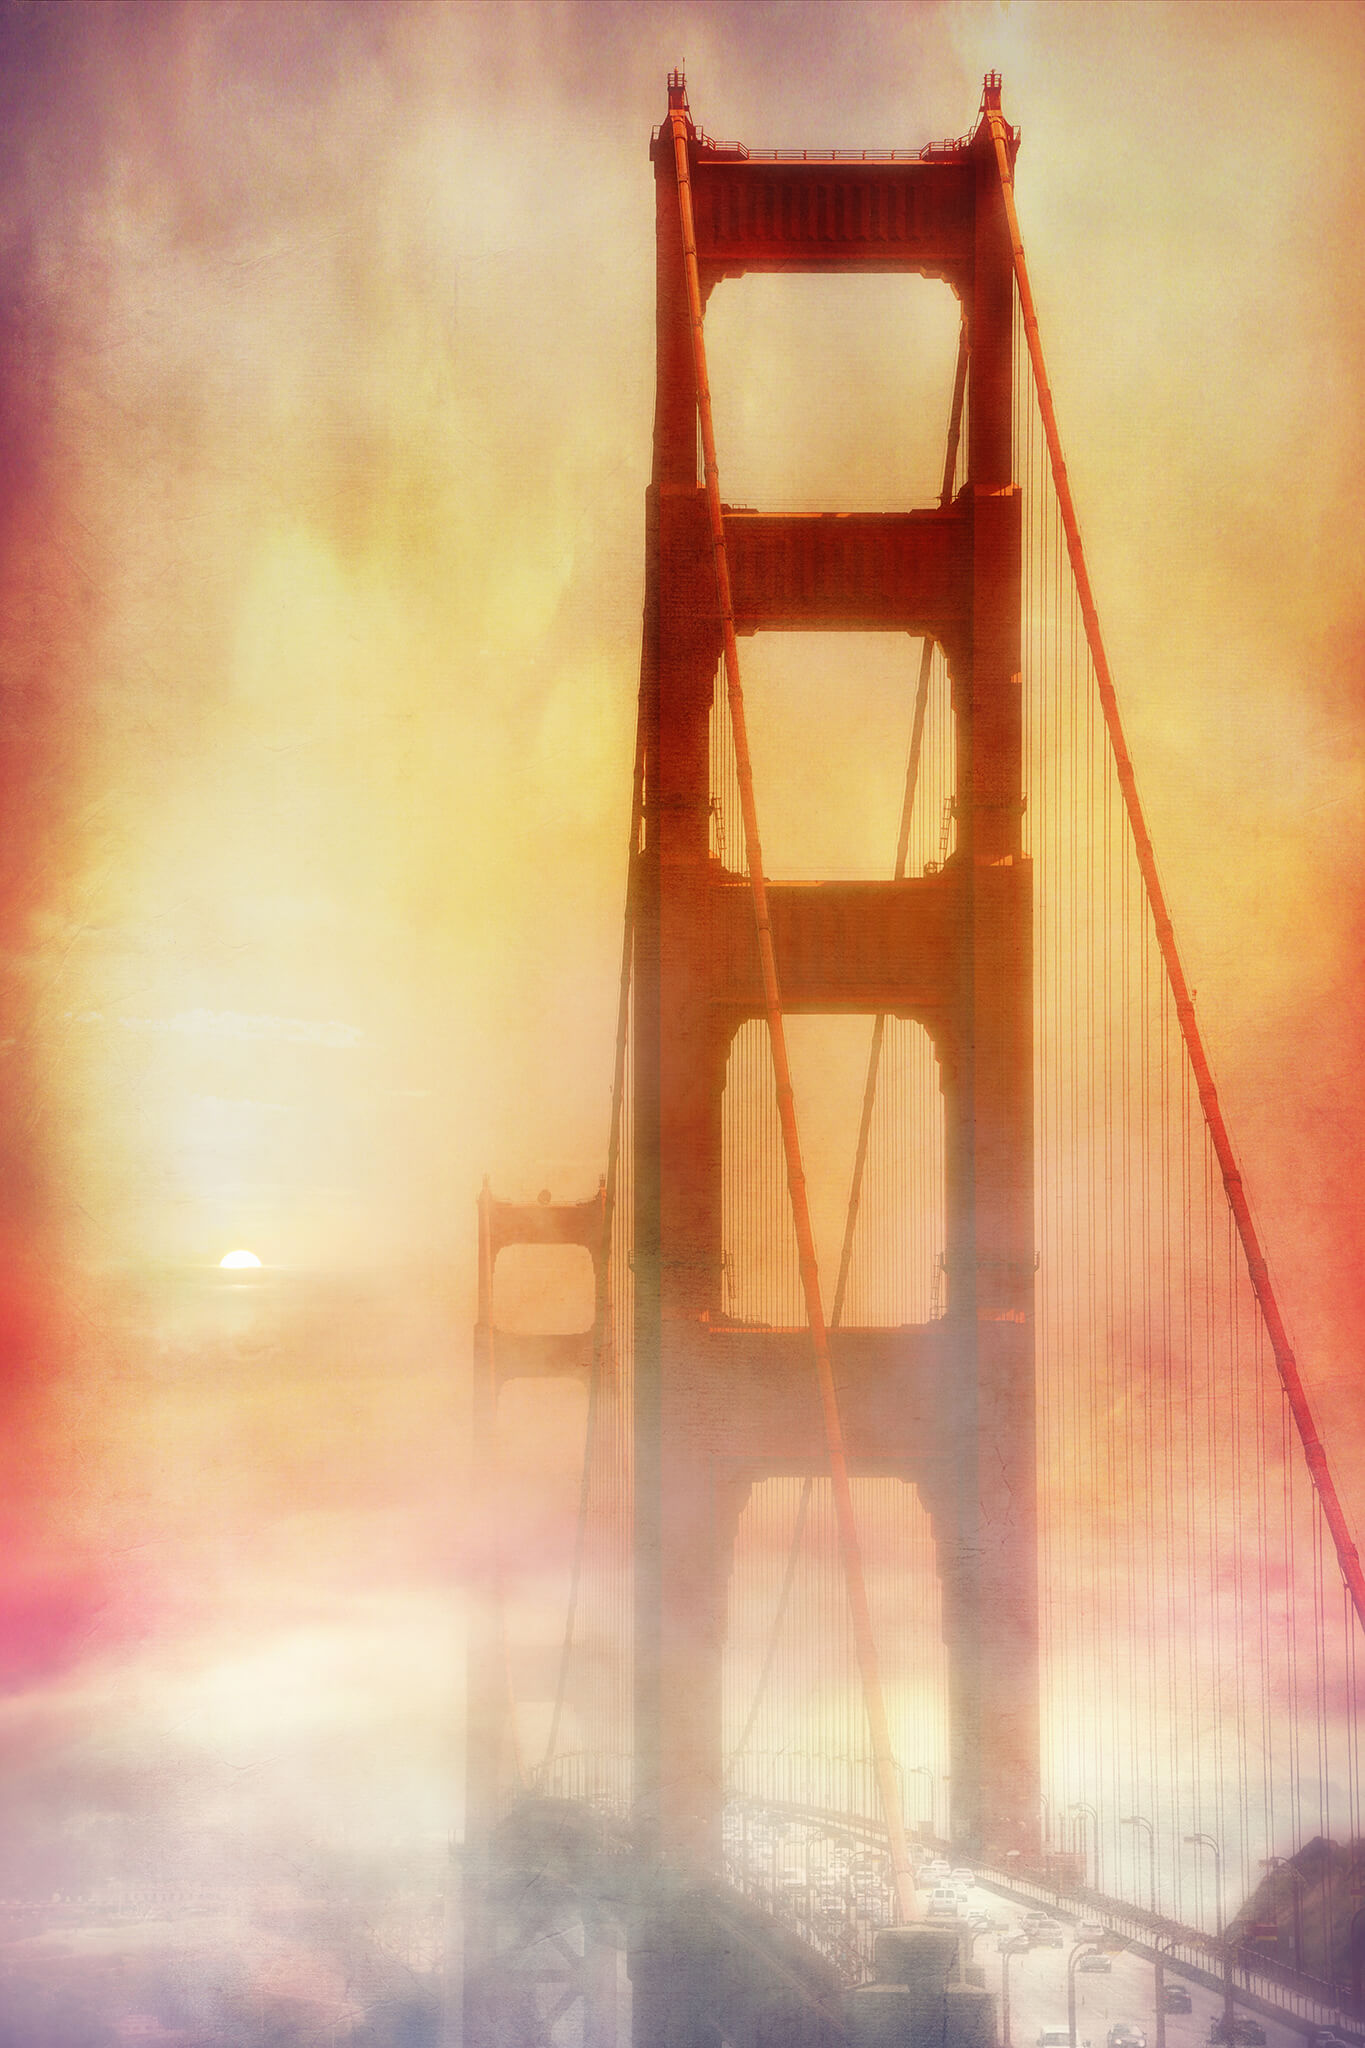 Abstract Golden Gate Bridge Art